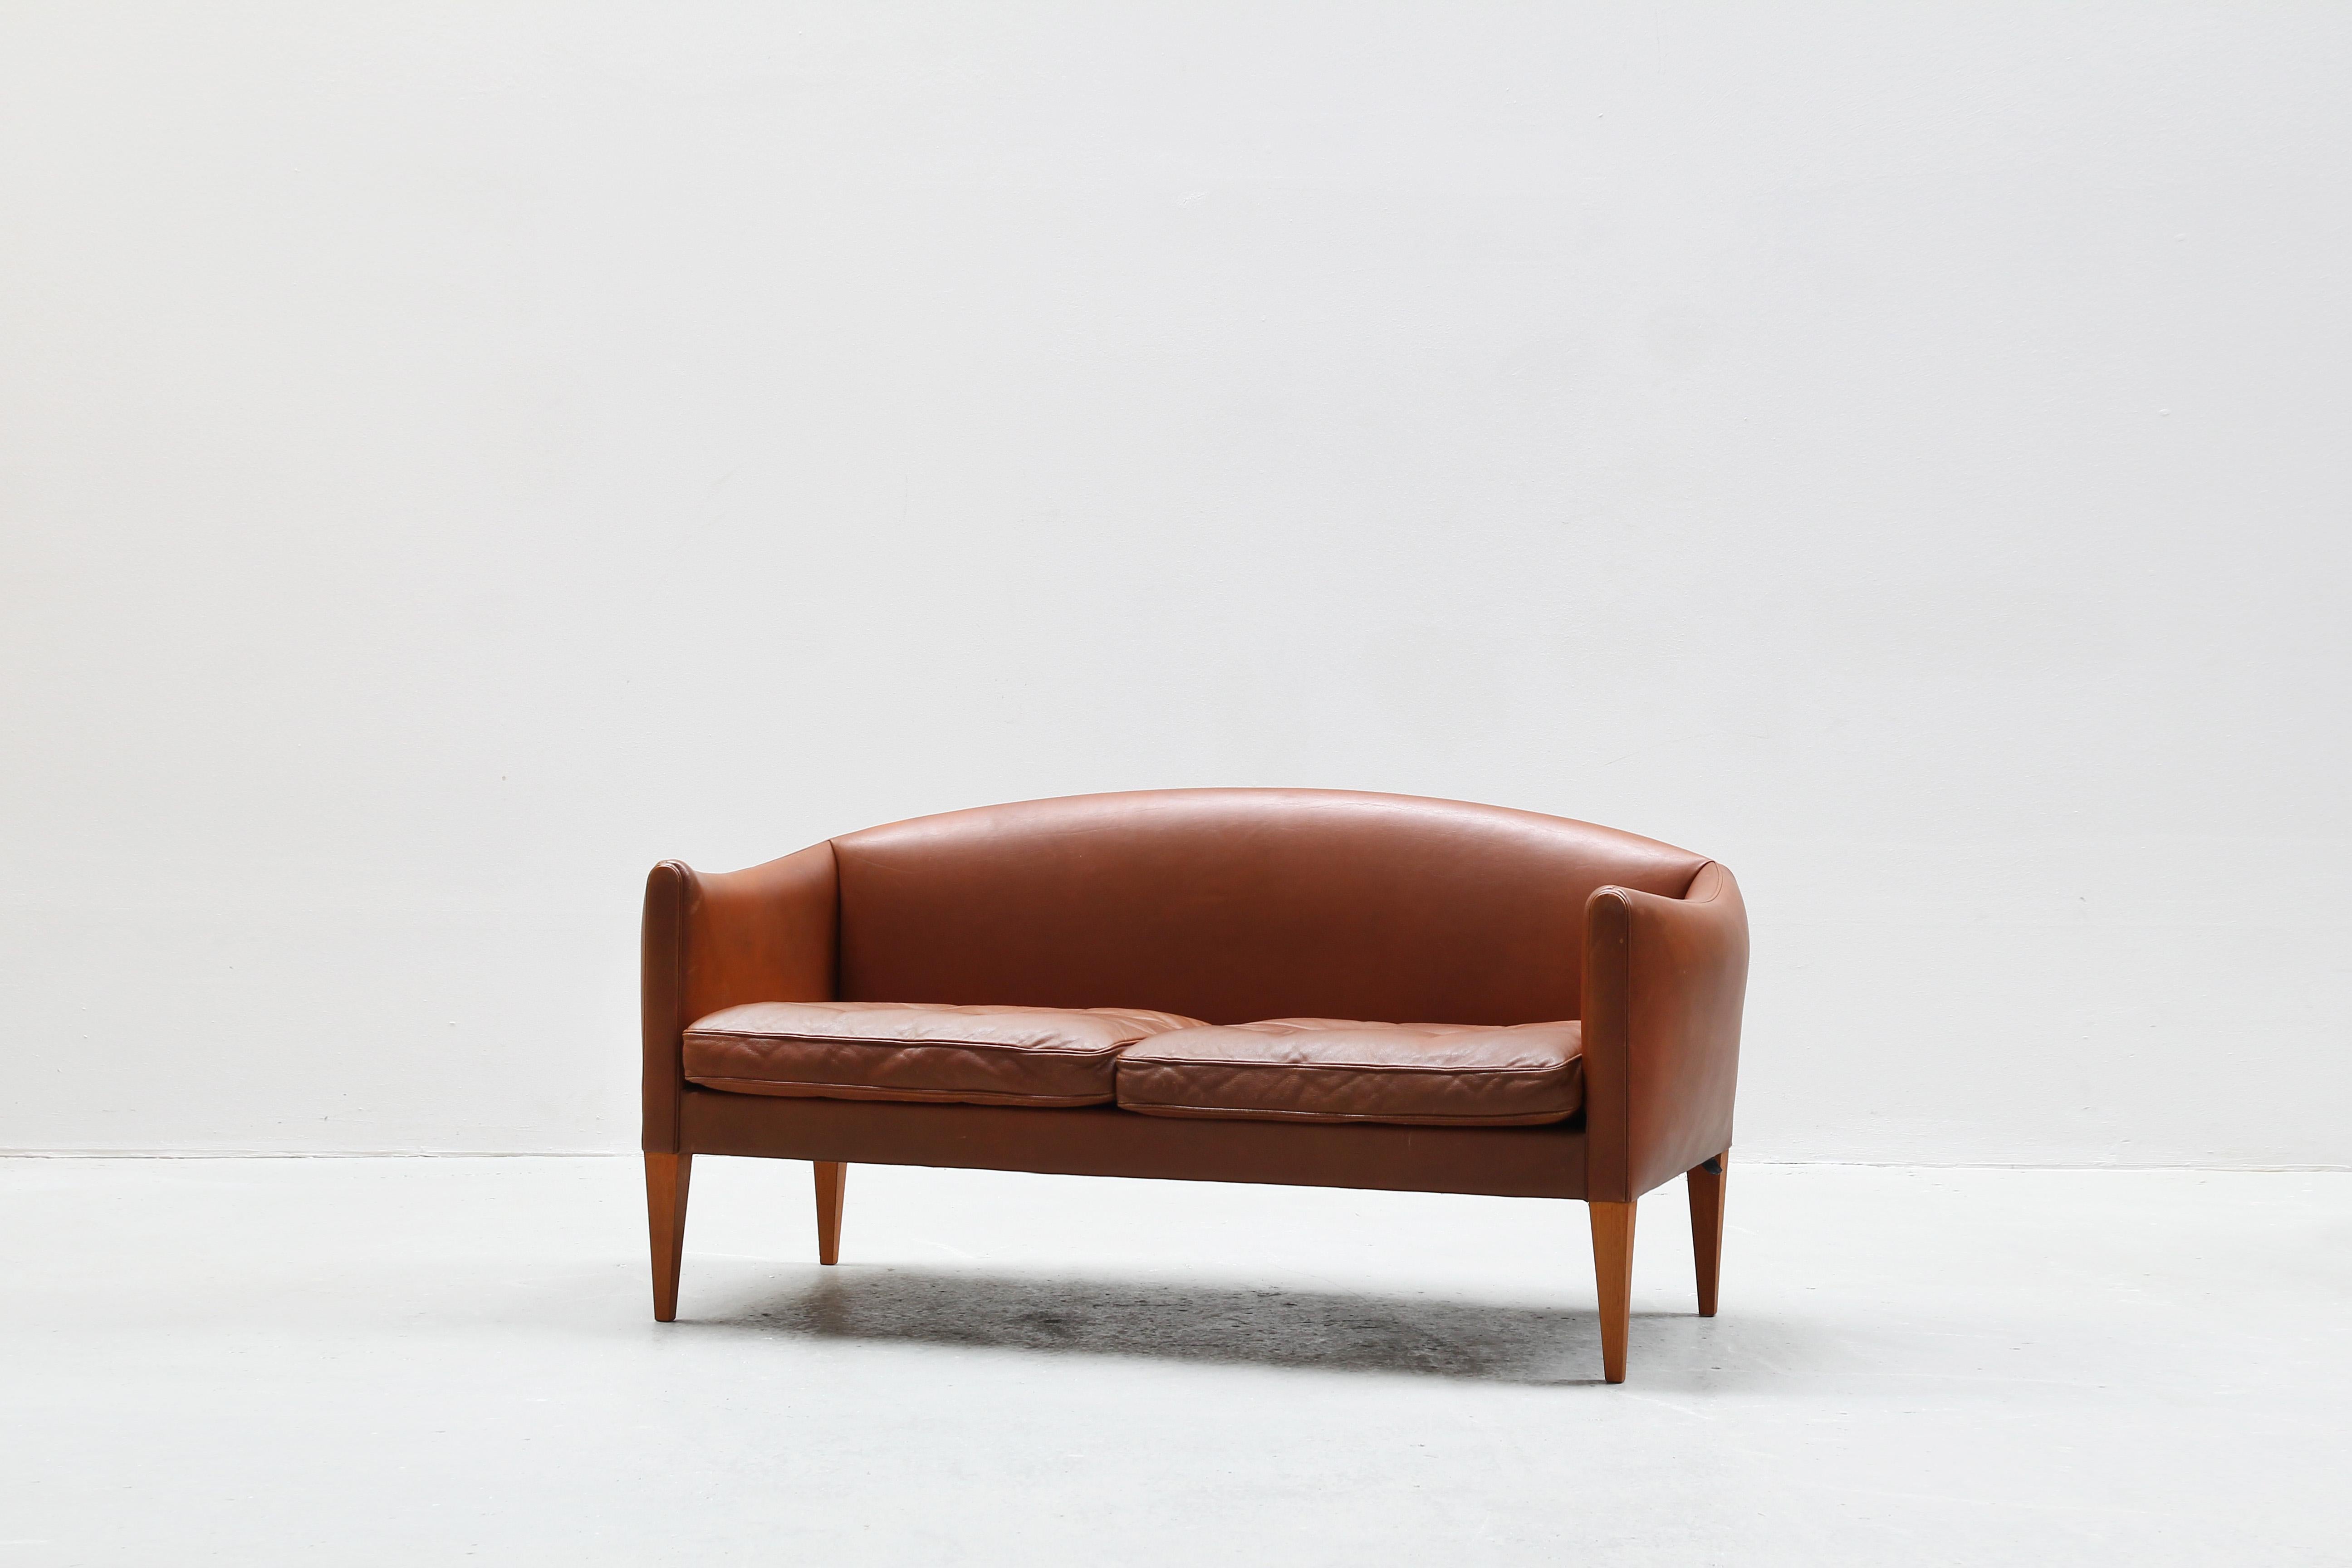 Sehr schönes zweisitziges Sofa, entworfen von Illum Wikkelsø und hergestellt von Holger Christiansen in den 1960er Jahren in Dänemark.
Das Sofa ist in einem tollen Originalzustand mit nur geringen Gebrauchsspuren.